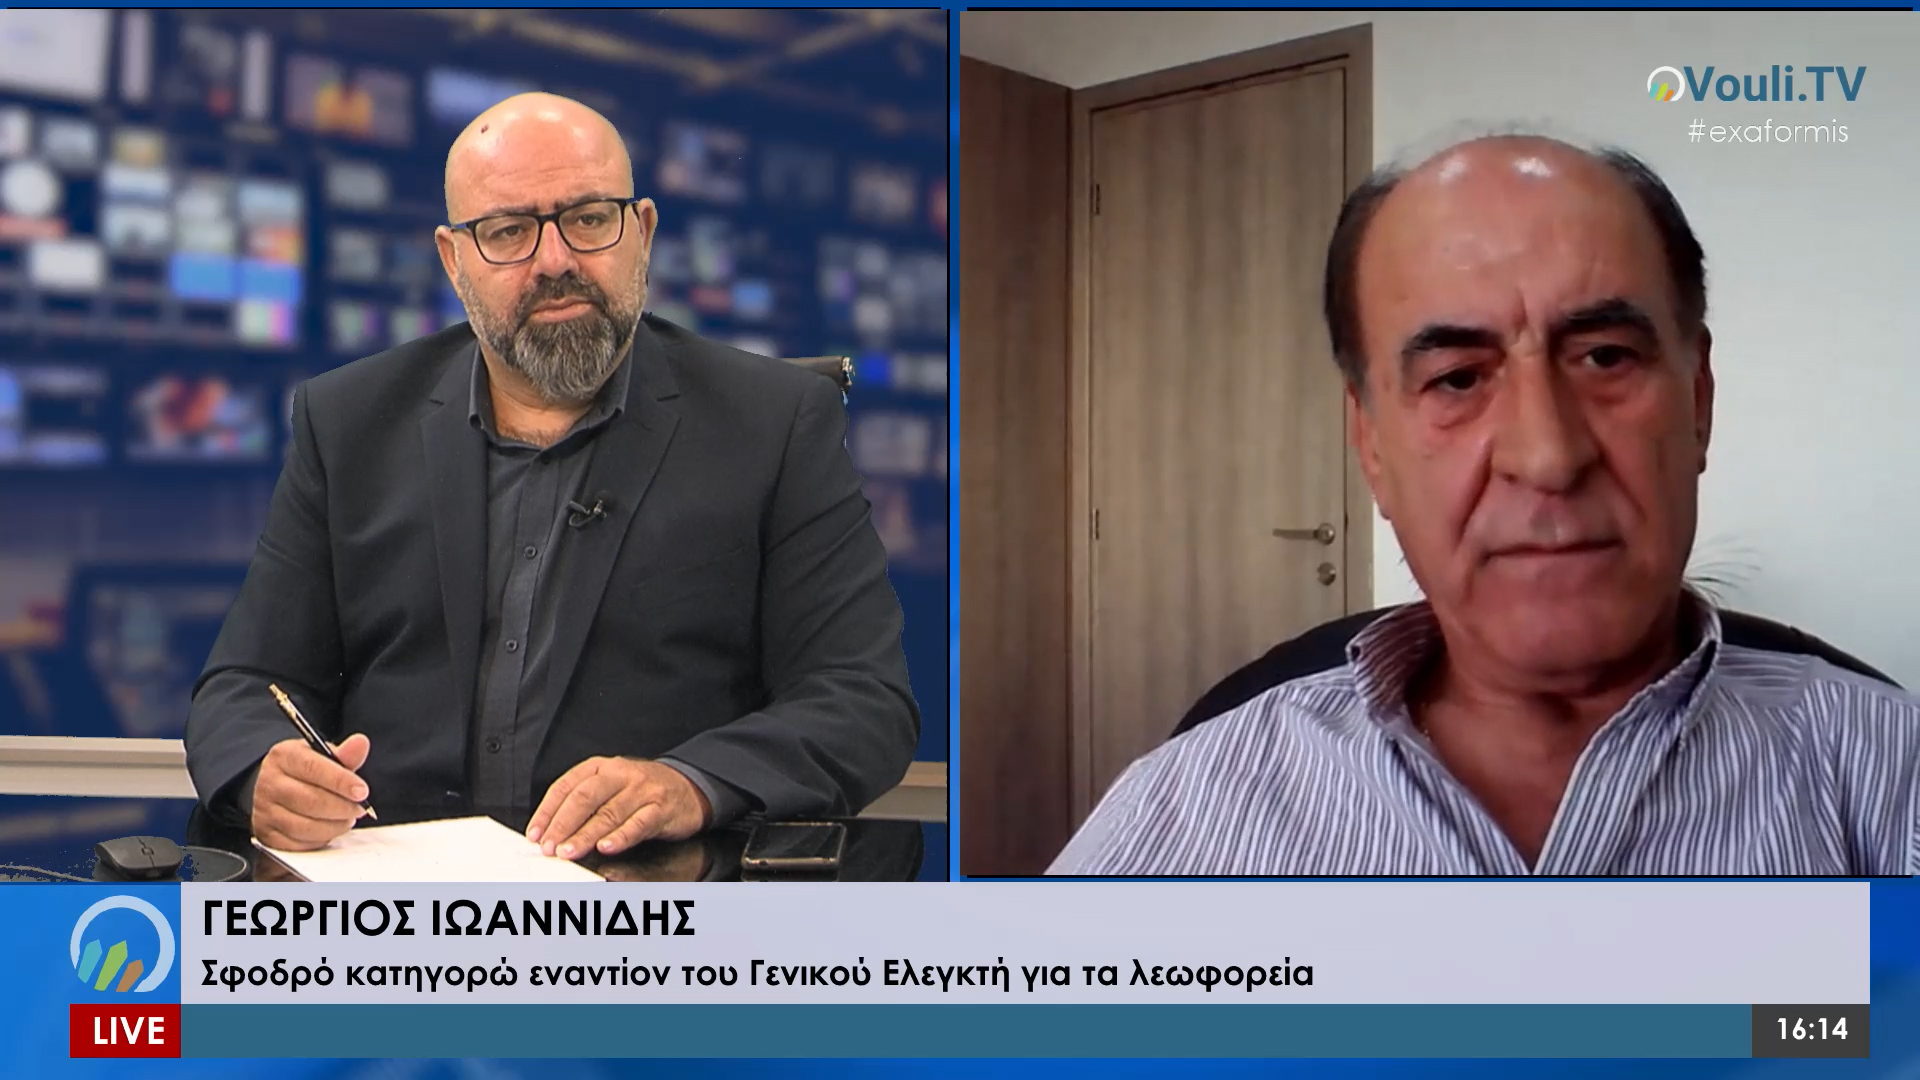 Γεώργιος Ιωαννίδης | Εξ Αφορμής @Vouli.TV | 29/10/2020